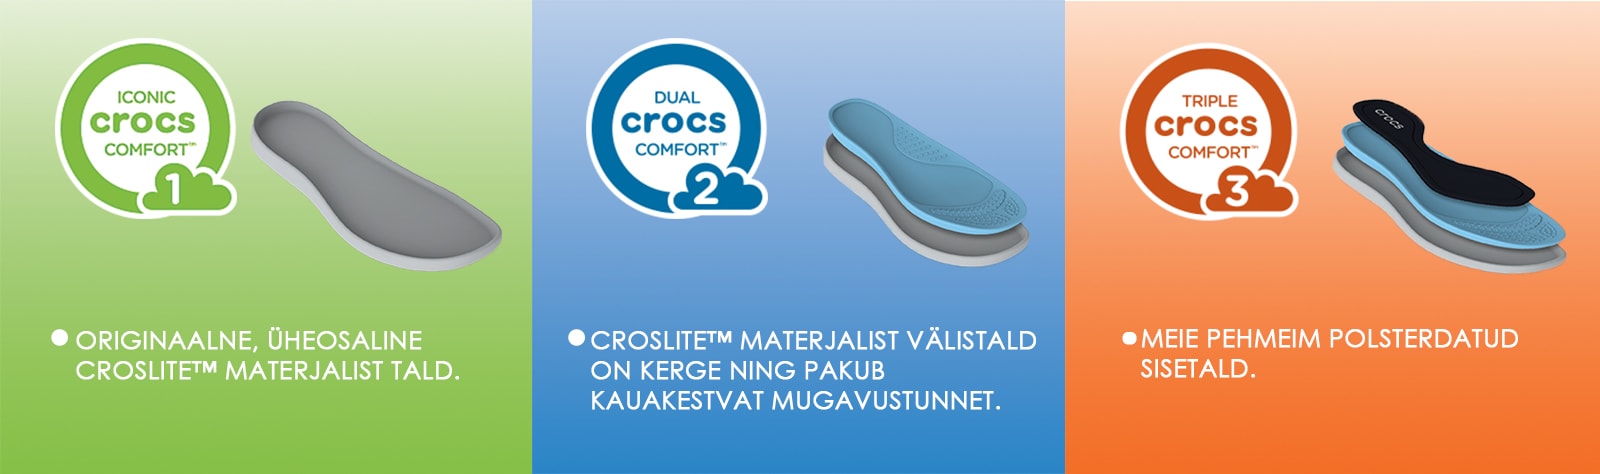 Crocs comforto lygiai_EE-min